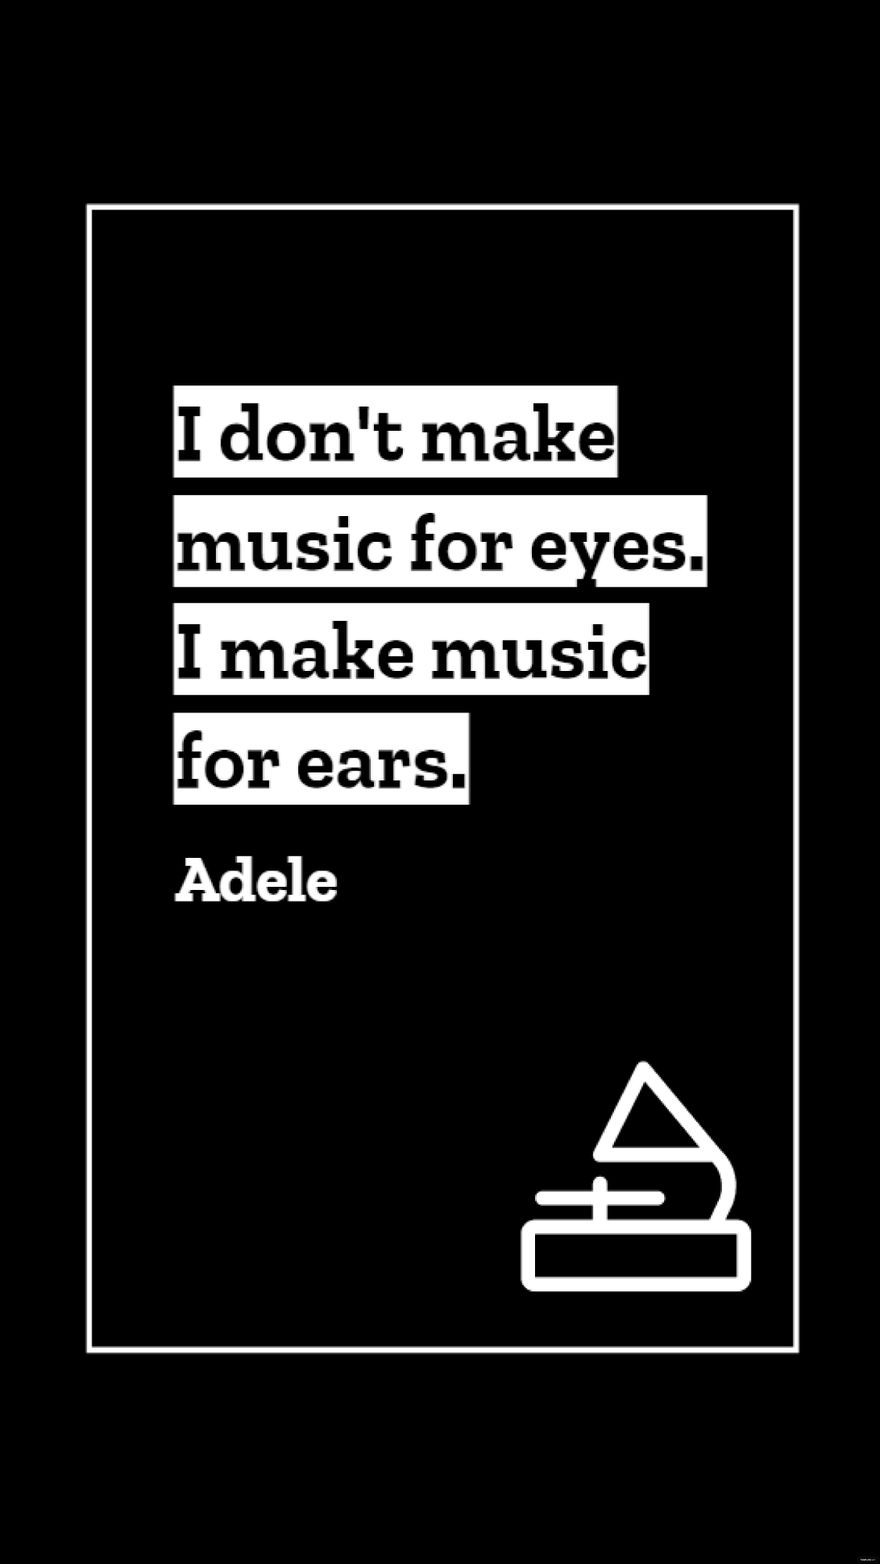 Adele - I don't make music for eyes. I make music for ears. in JPG